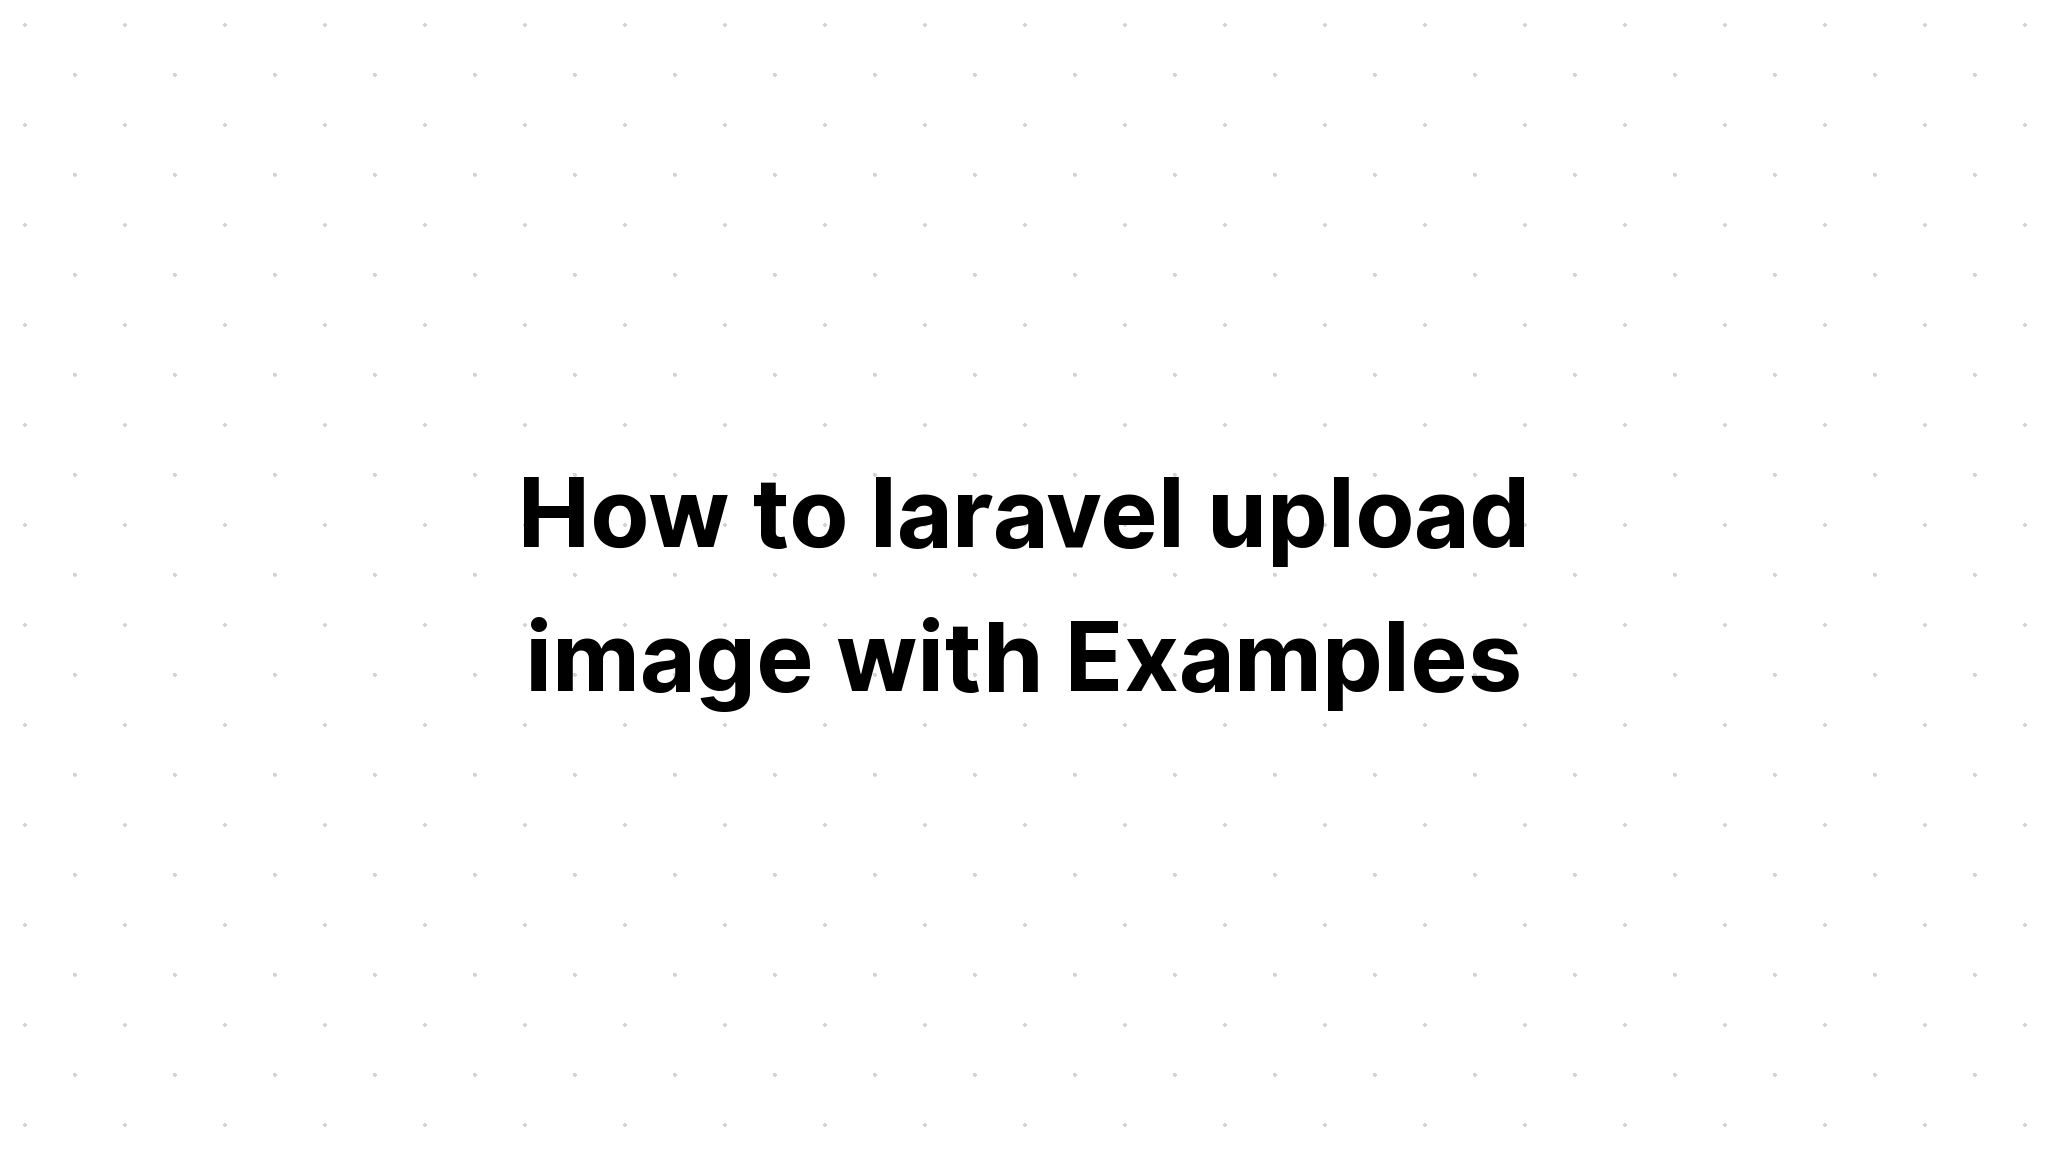 Cách tải hình ảnh lên laravel với các ví dụ